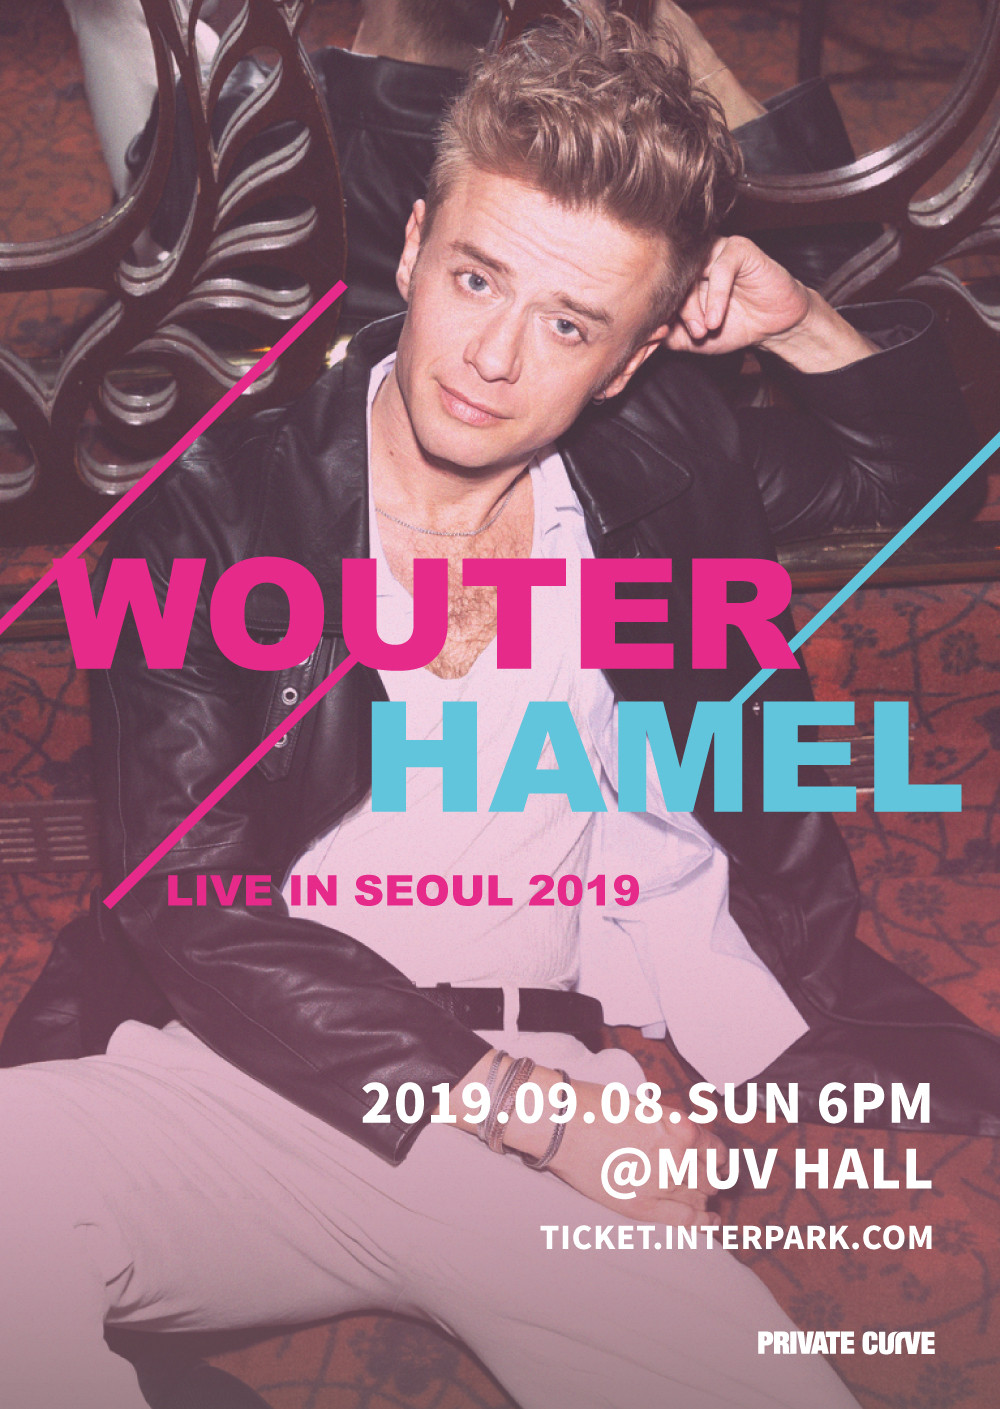 [공연안내] WOUTER HAMEL LIVE IN SEOUL 2019